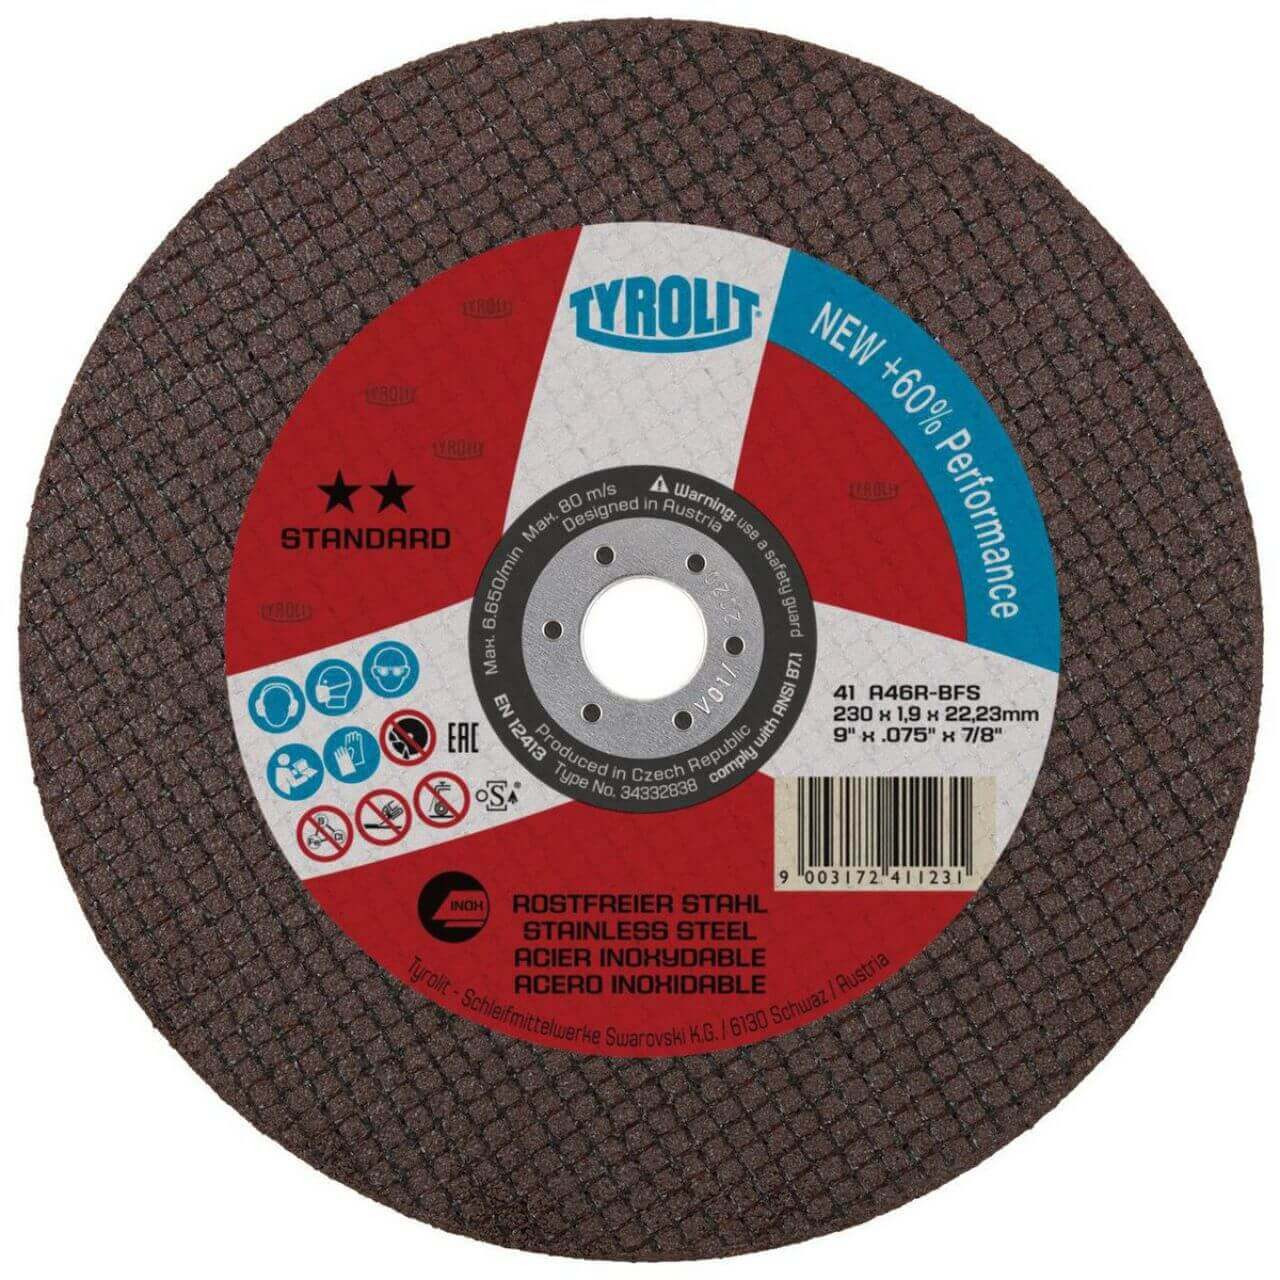 Tyrolit A46R 230x1.9x22 Inox Standard Cutting Disc 25/box